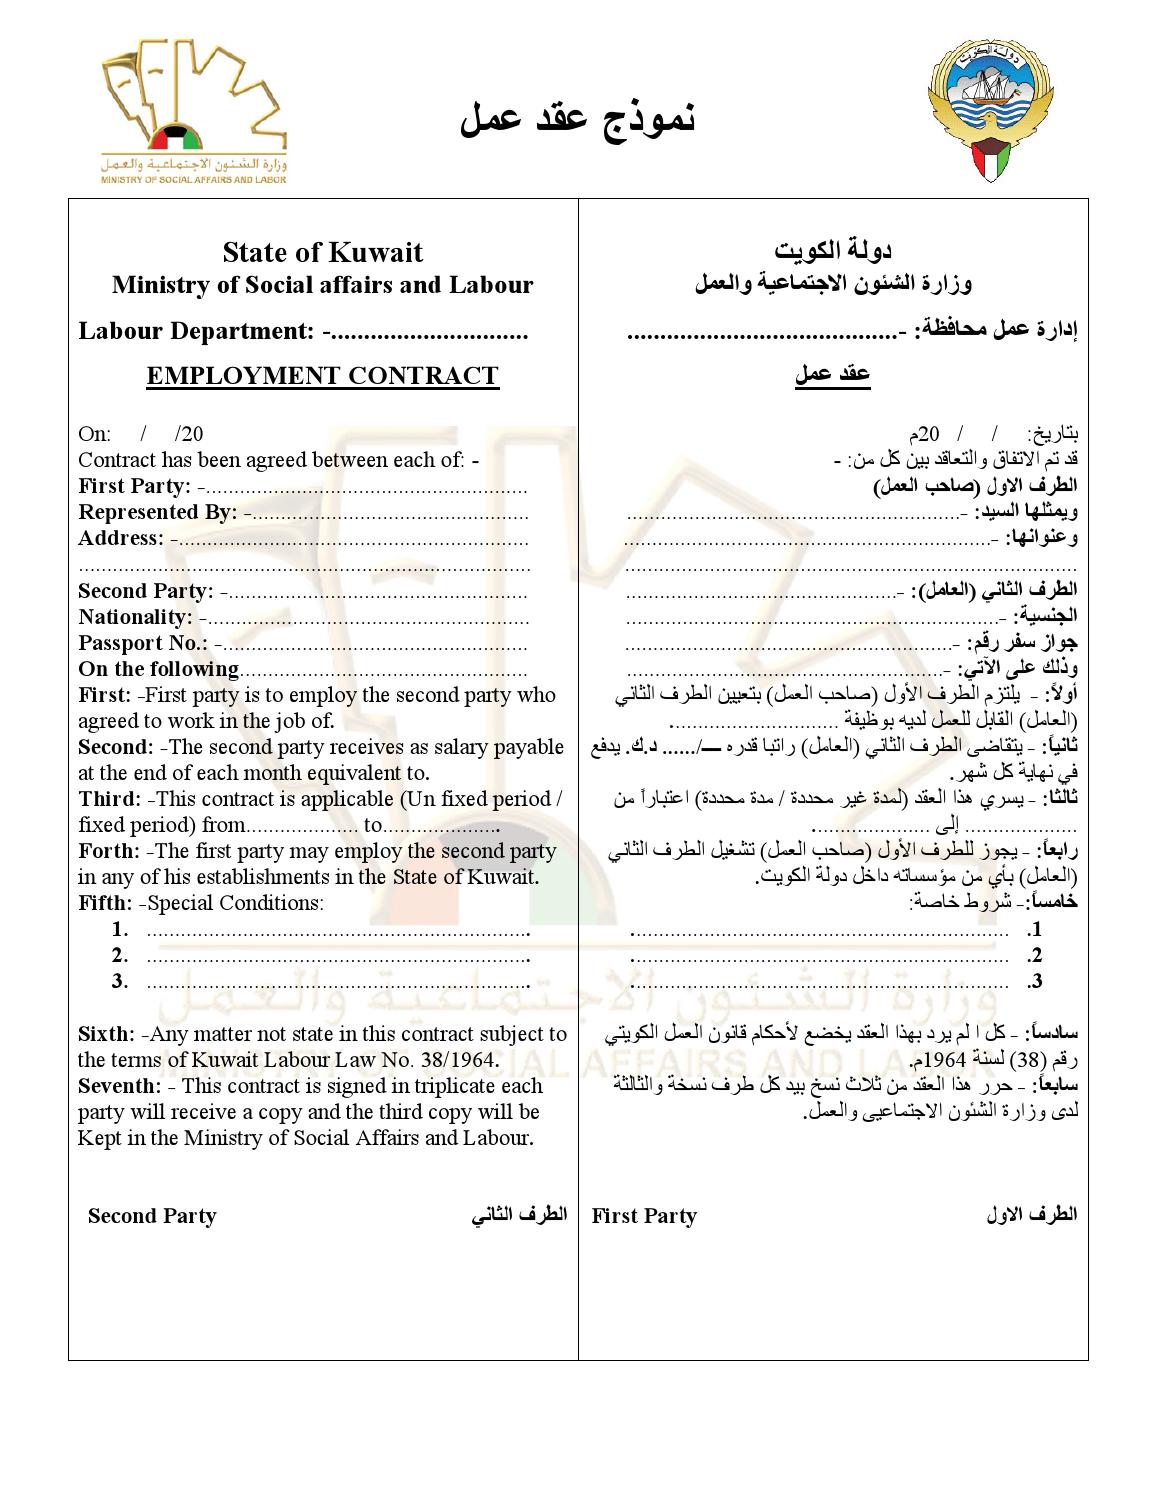 وزارة الشئون الاجتماعية والعمل الكويت نموذج عقد عمل موقع محتويات